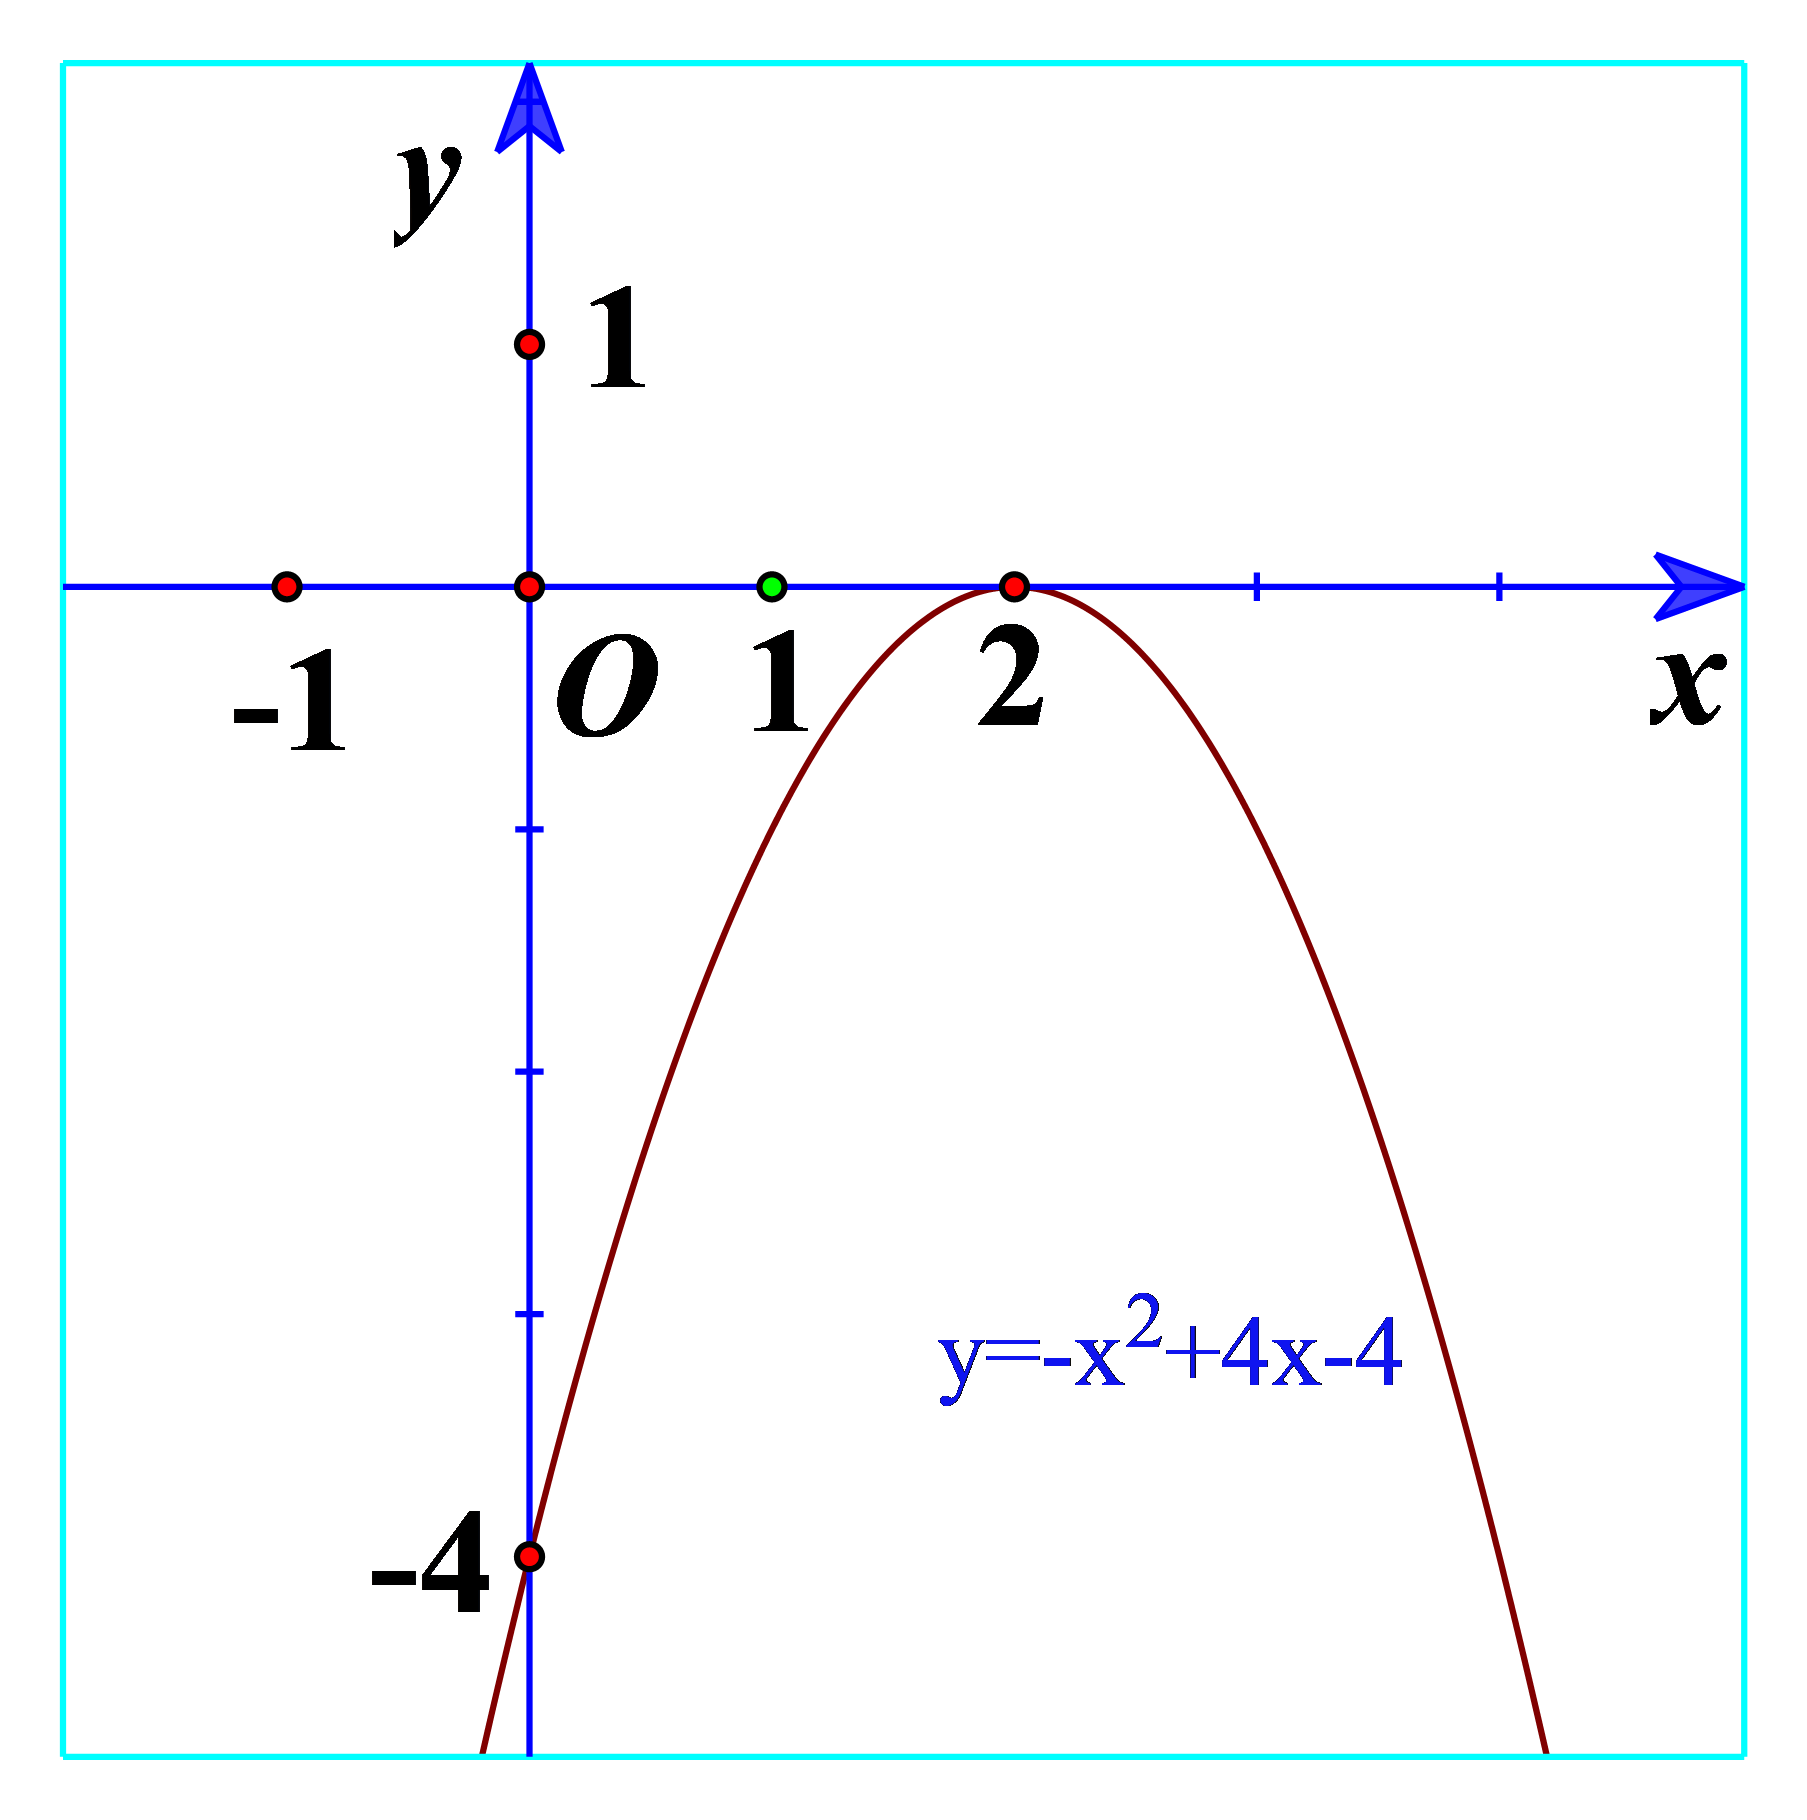 Tam thức bậc hai là loại phương trình toán học phổ biến được sử dụng trong nhiều lĩnh vực. Xem hình liên quan tới tam thức bậc hai sẽ giúp bạn hiểu rõ hơn về cơ chế hoạt động của nó và những ứng dụng thực tế của tam thức bậc hai.